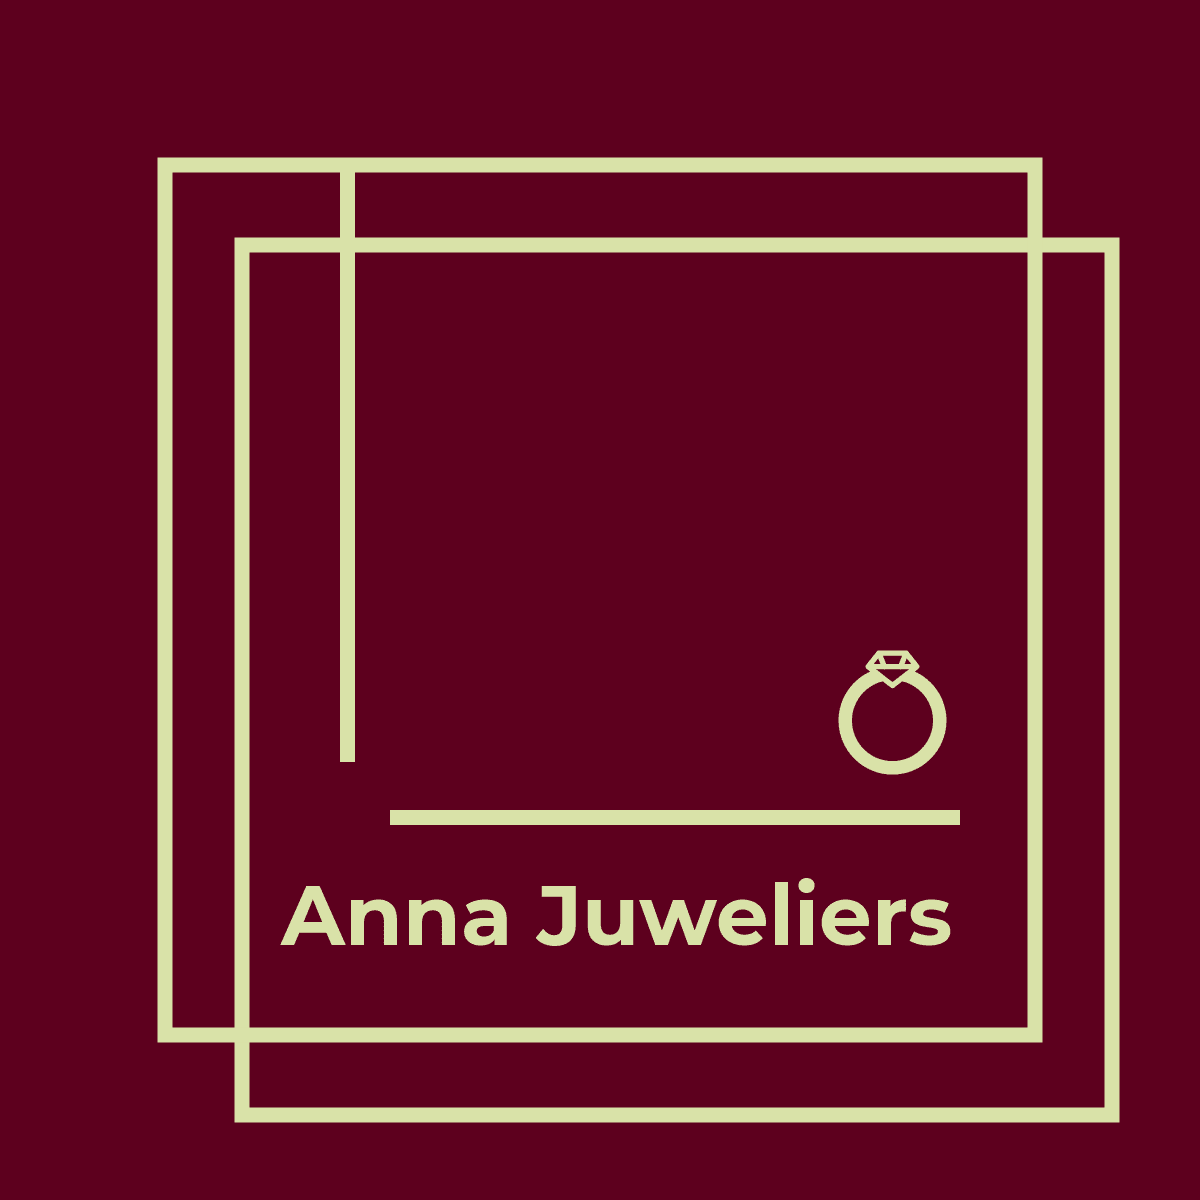 Anna Juweliers